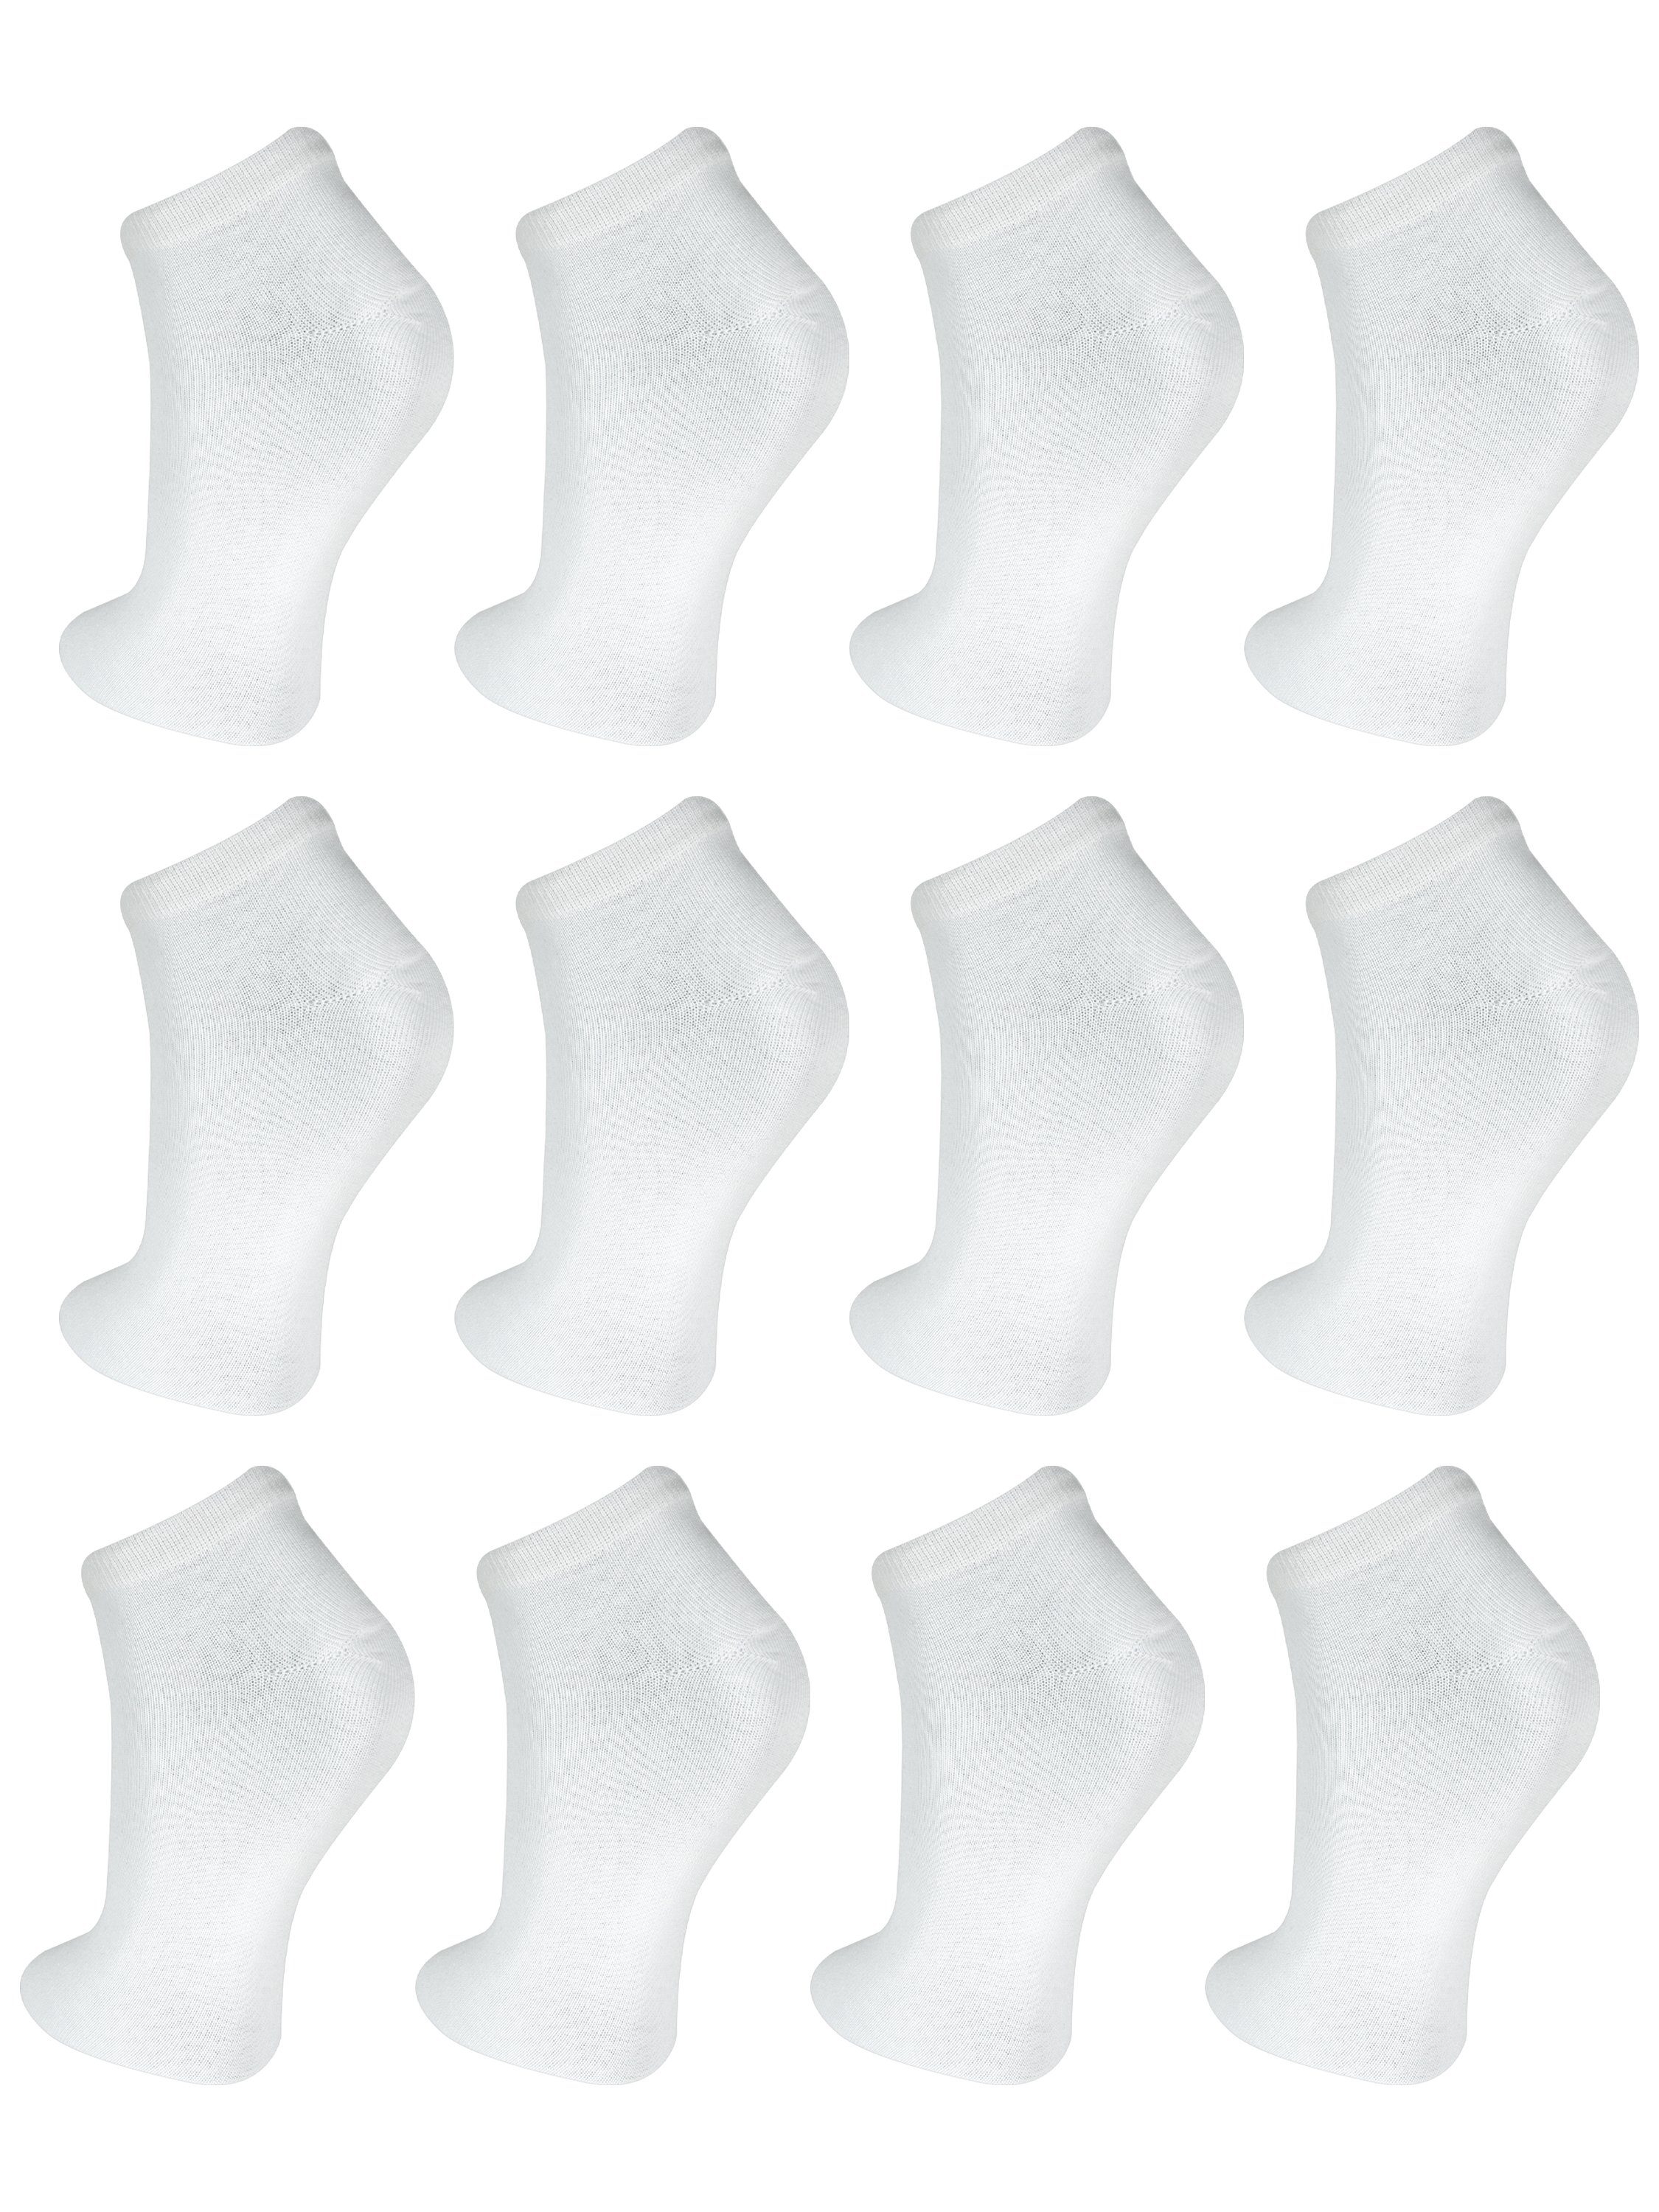 Freizeit (12-Paar) Weiß Kurzsocken Baumwolle TEXEMP Herren Paar bis 60 Damen Sneaker Socken Strapazierfähig 12